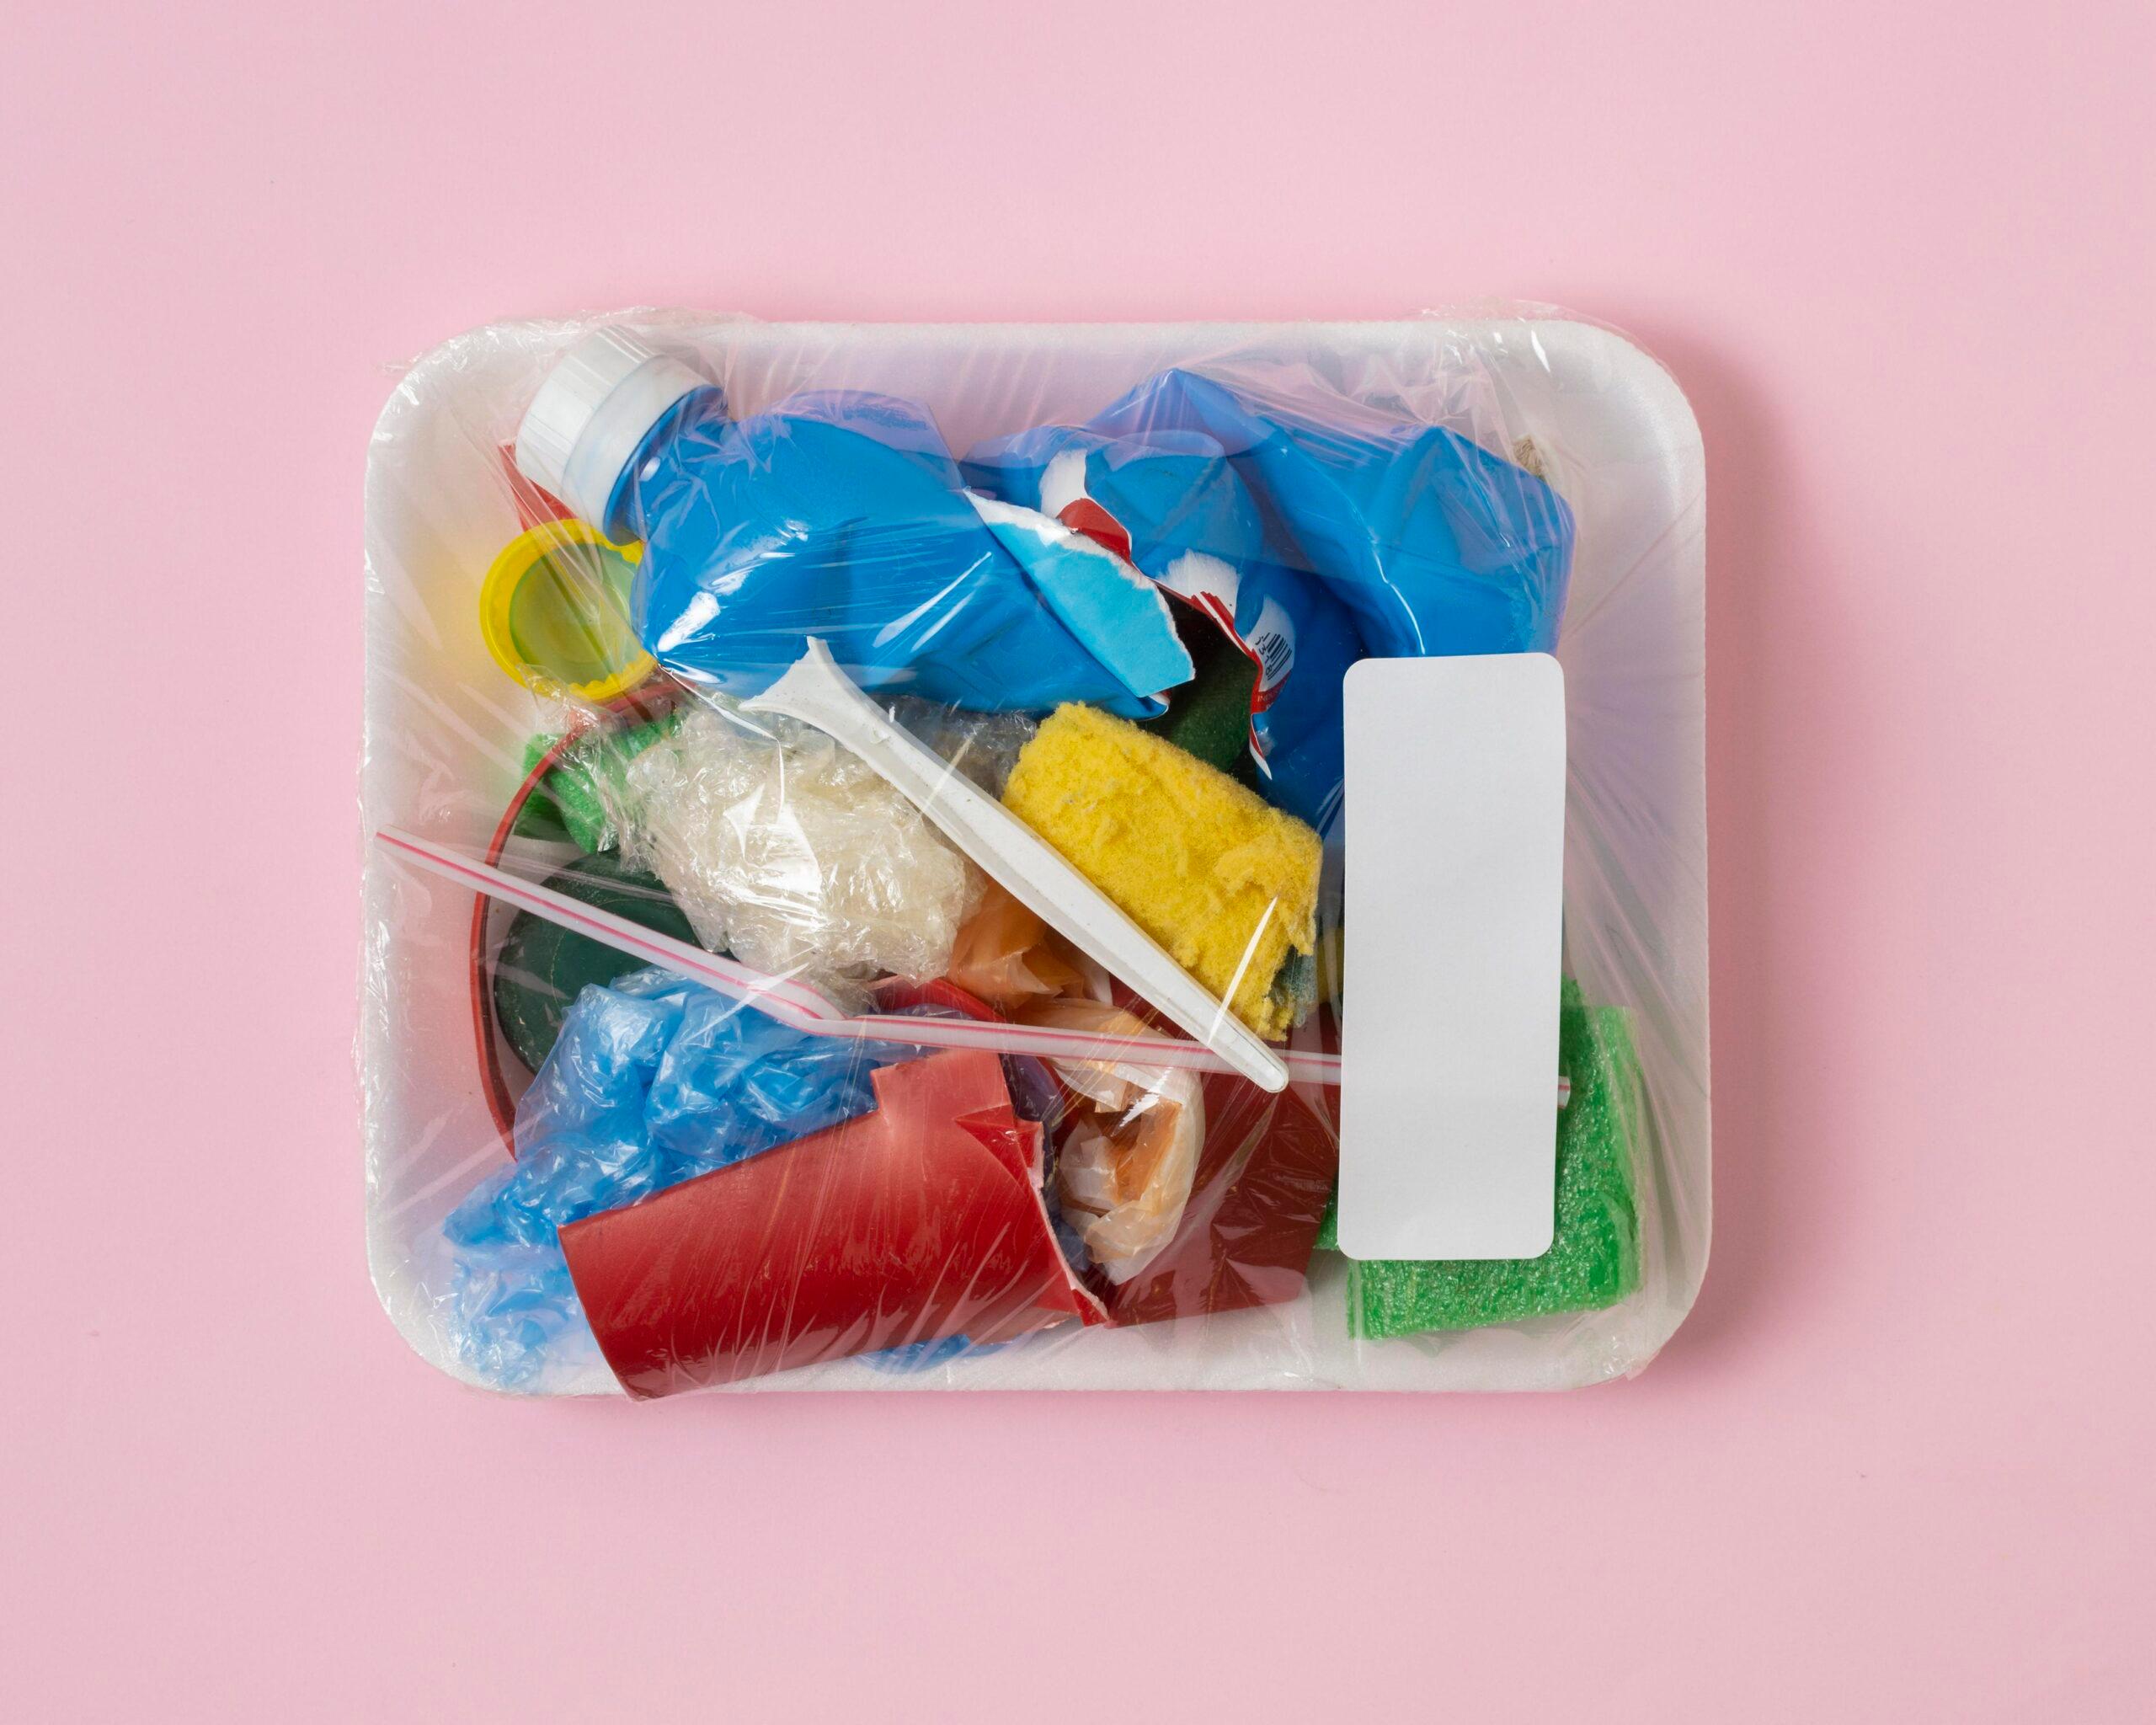 Jenis dan Bahaya Plastik yang Perlu Kita Ketahui  | Pasti Angkut